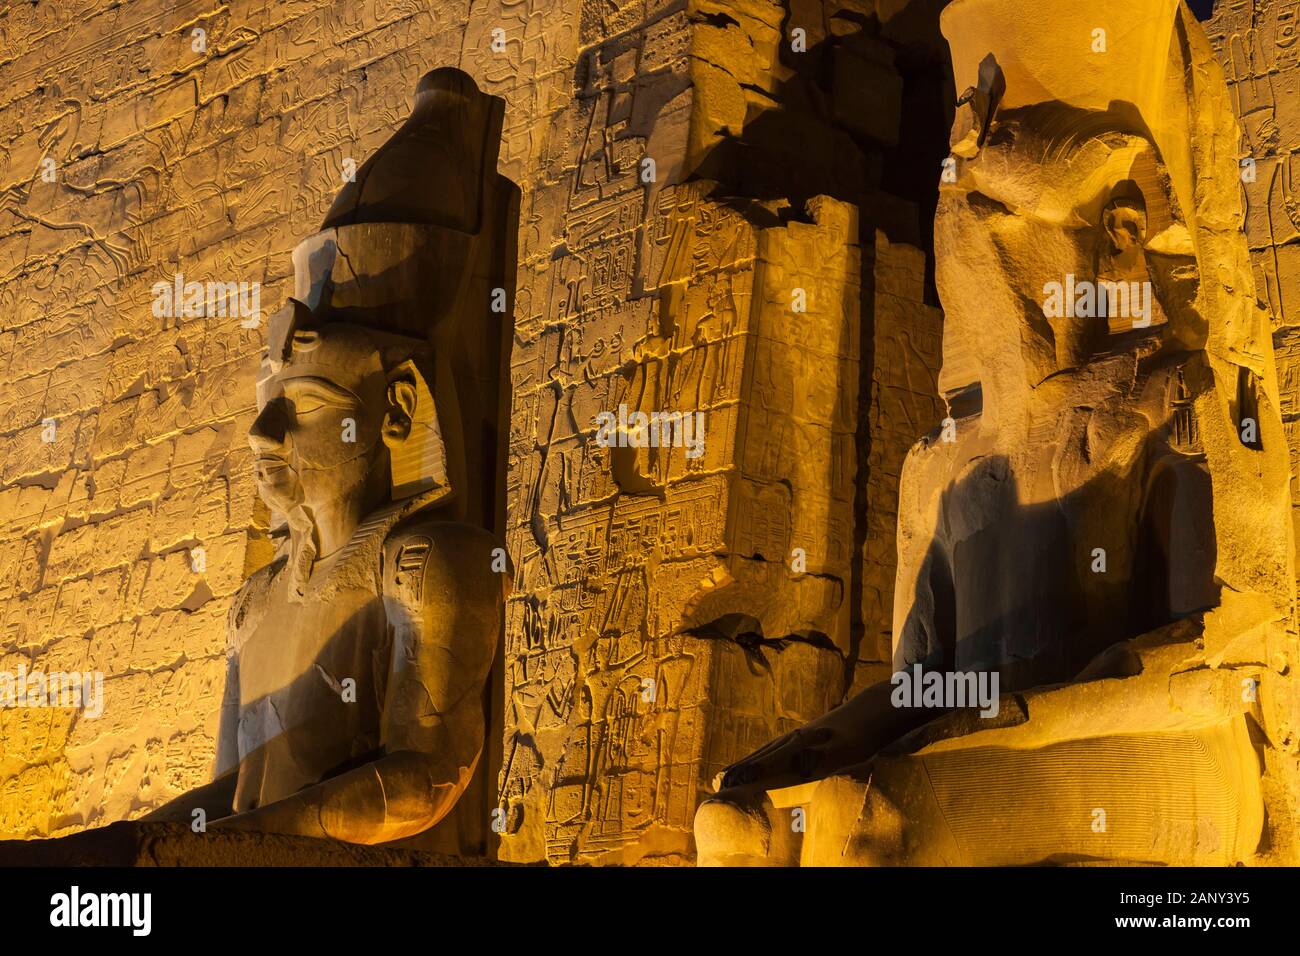 Éclairage sur le premier phylon au crépuscule du soir, Temple de Louxor, Louxor, Egypte, Afrique du Nord, Afrique Banque D'Images